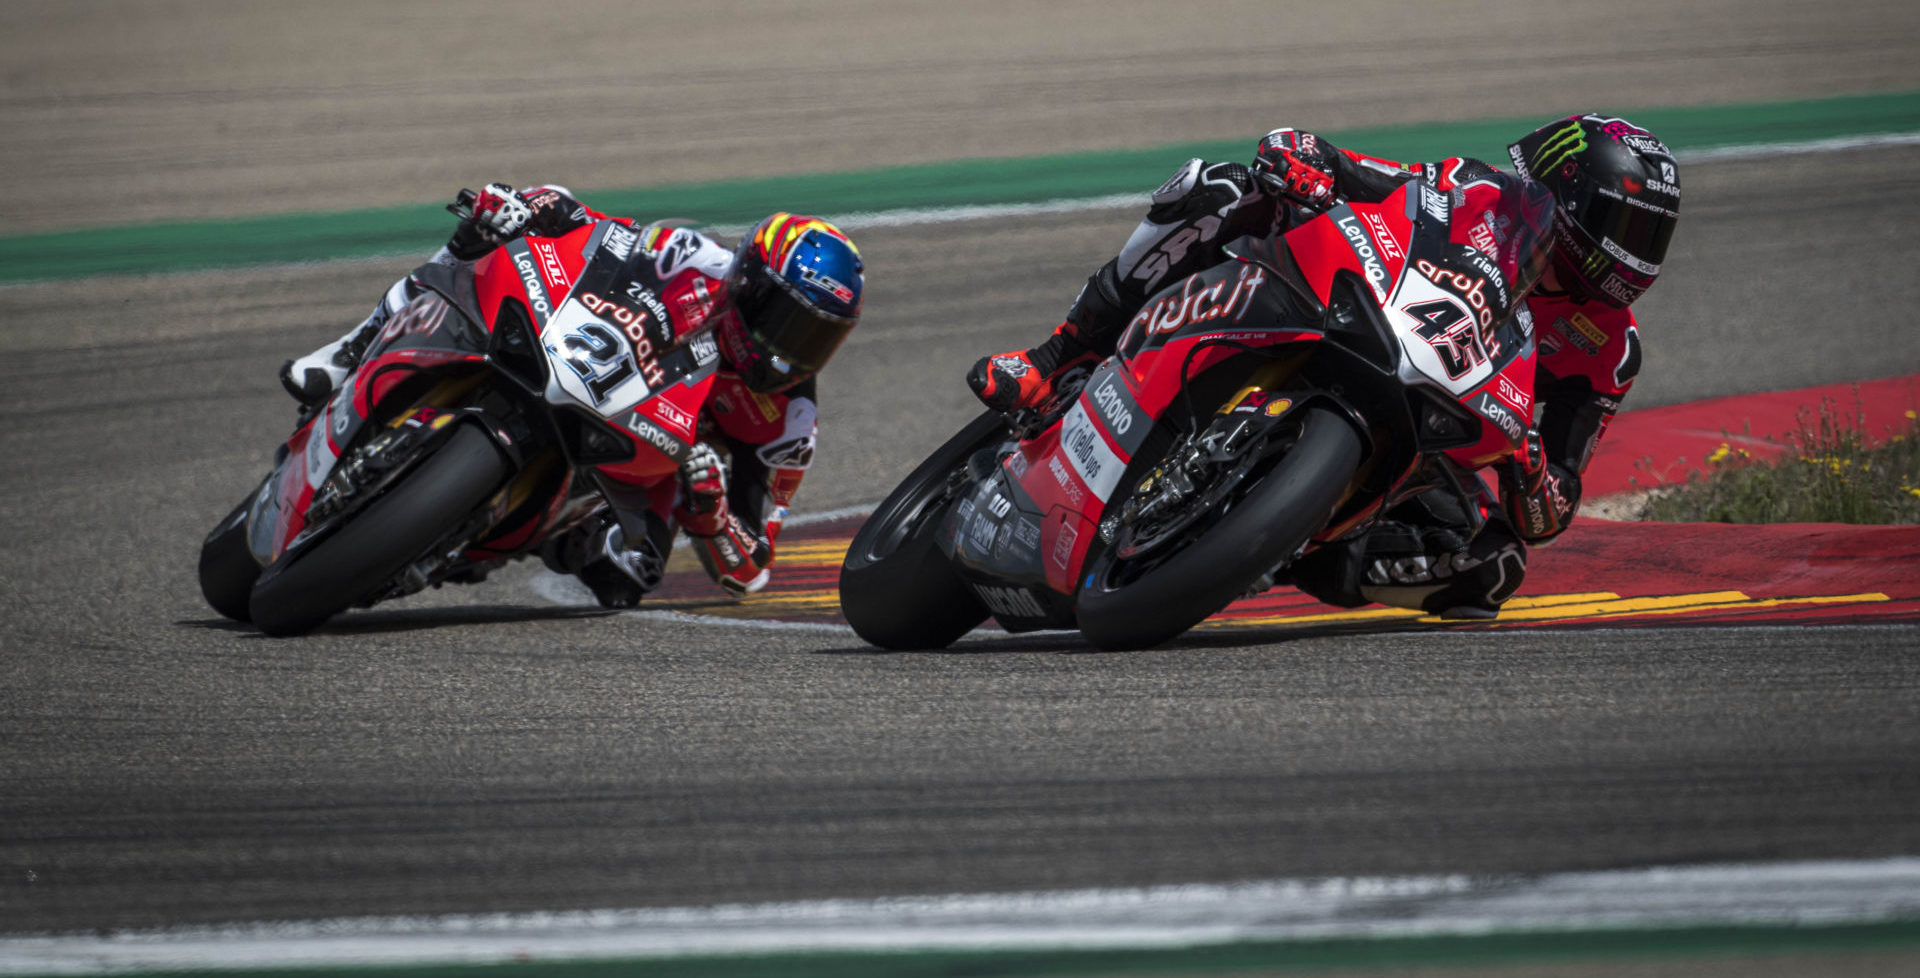 Ducati WorldSBK riders Scott Redding (45) and Michael Ruben Rinaldi (21) in action. Photo courtesy Ducati.